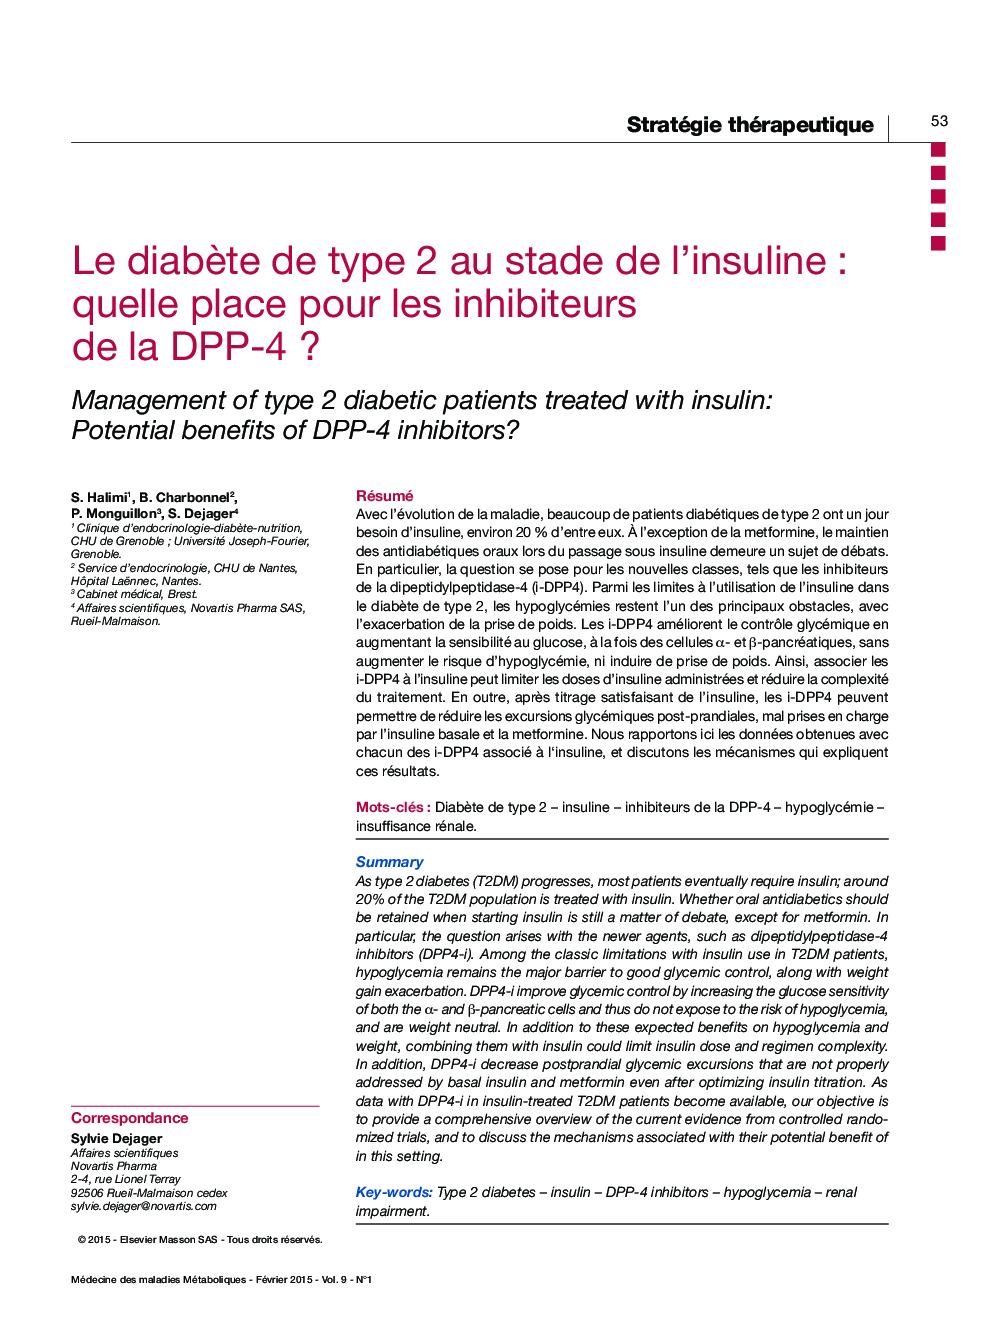 Le diabÃ¨te de type 2 au stade de l'insuline : Quelle place pour les inhibiteurs de la DPP-4 ?